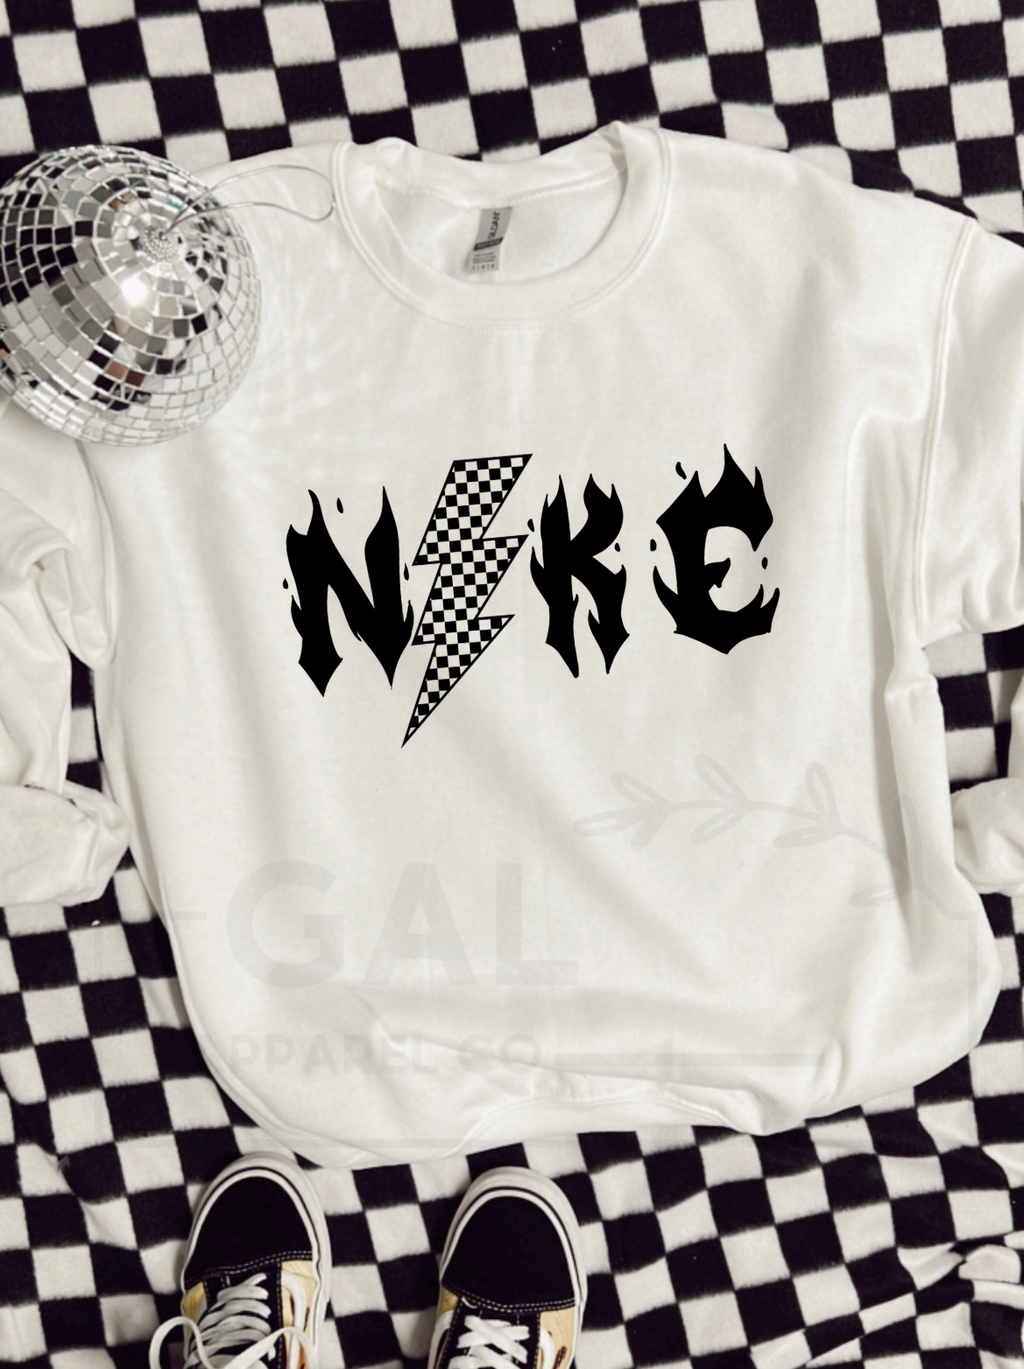 Checkered NKE  design tee or sweatshirt